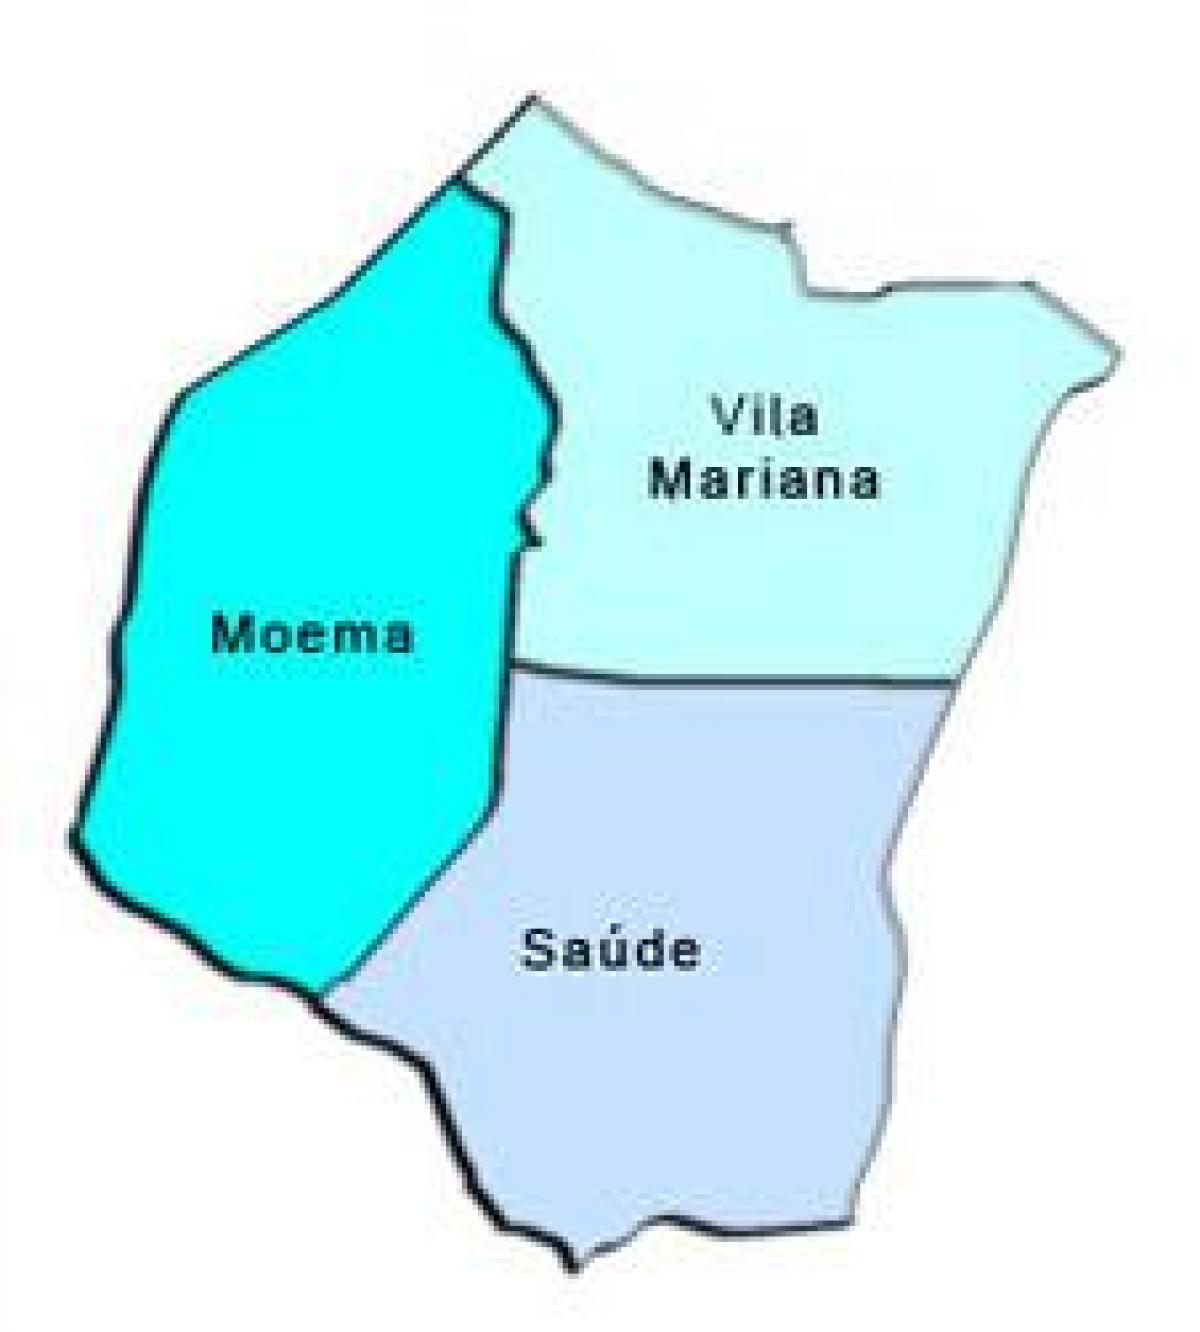 نقشہ کی ولا ماریانا ذیلی صوبے